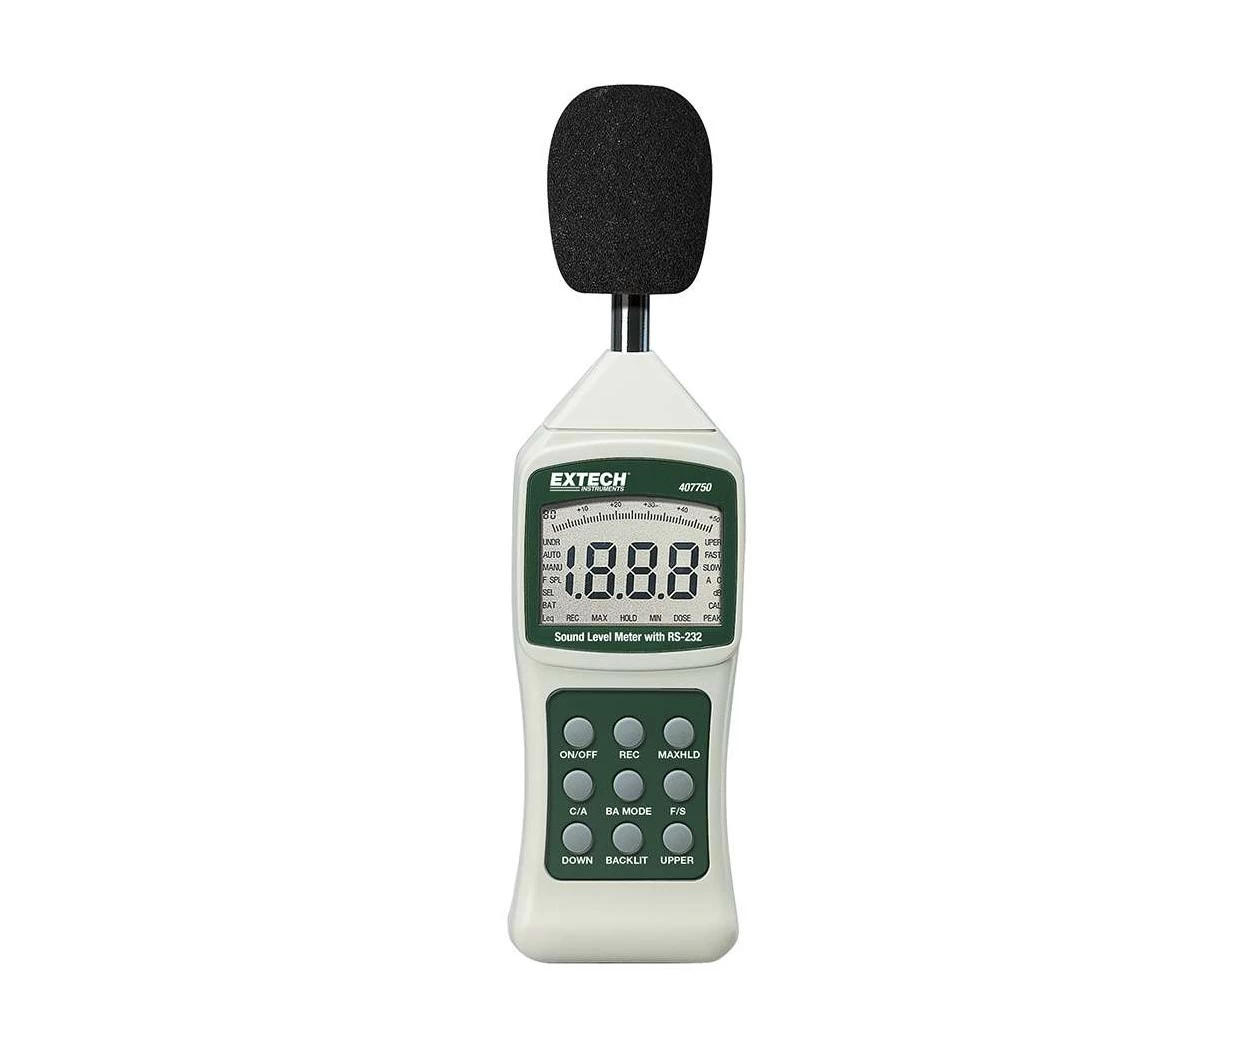 Цифровой измеритель шума с ПК интерфейсом Extech 407750 - 1